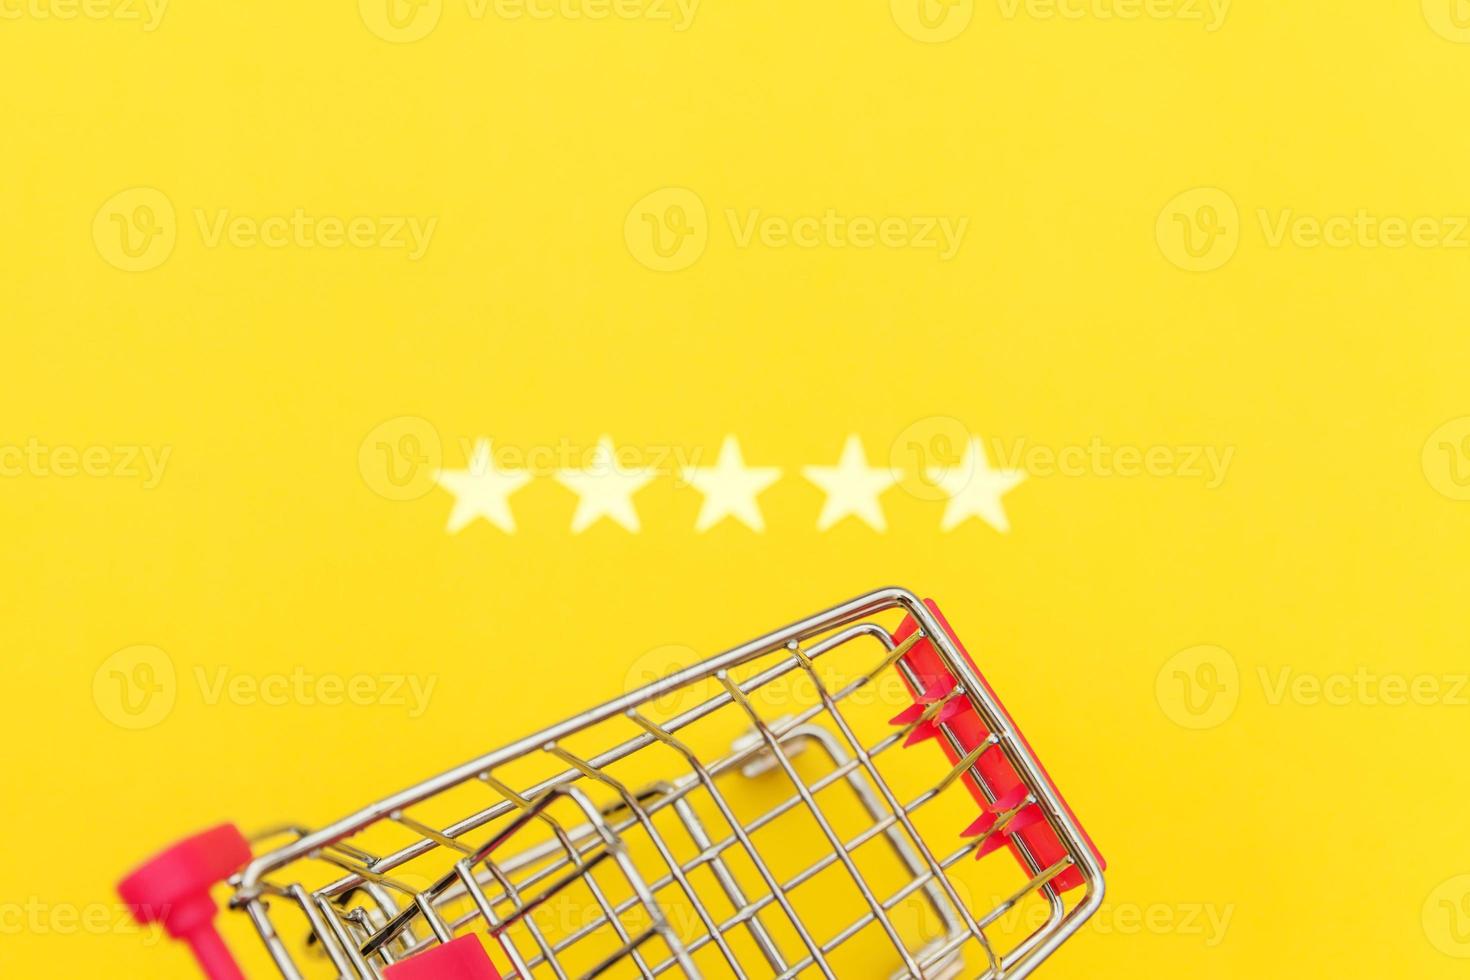 kleine supermarkt kruidenierswinkel duwkar voor winkelen speelgoed met wielen en 5 sterren geïsoleerd op gele achtergrond. retailconsument die online beoordelings- en beoordelingsconcept koopt. foto